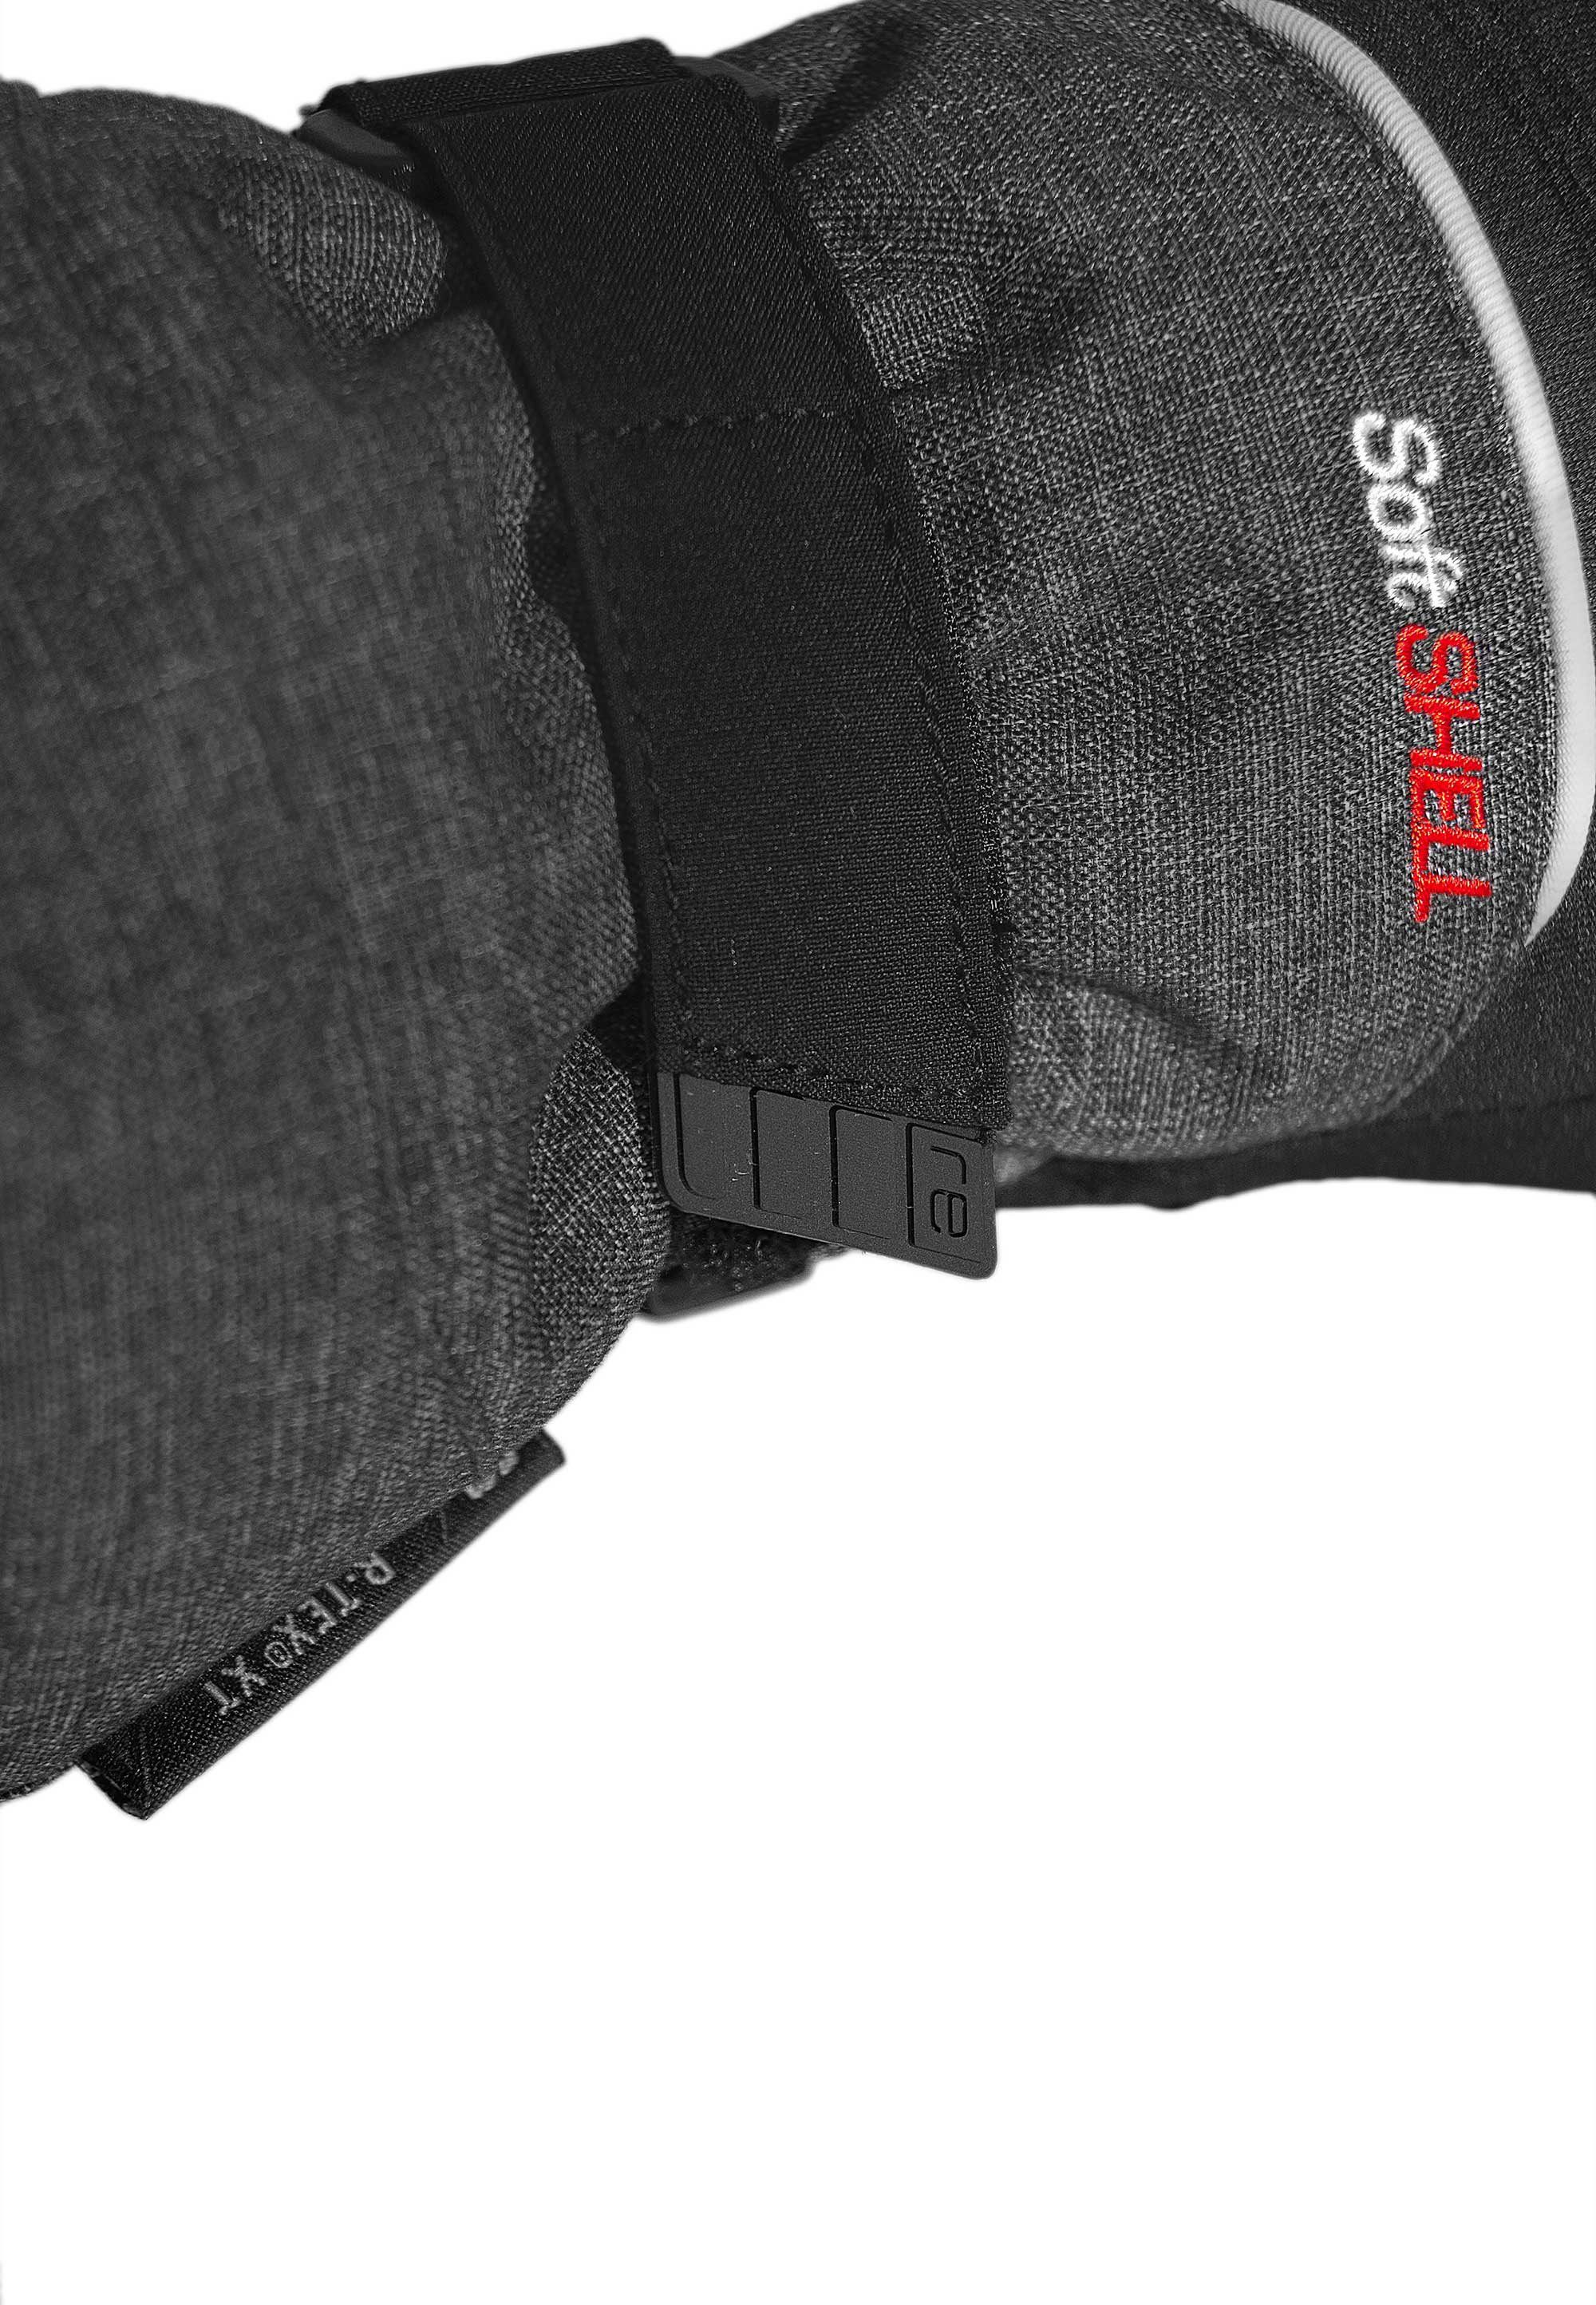 Junior R-TEX® Fäustlinge schwarz-grau Insert-Membran Mitten mit innovativer XT Kondor Reusch